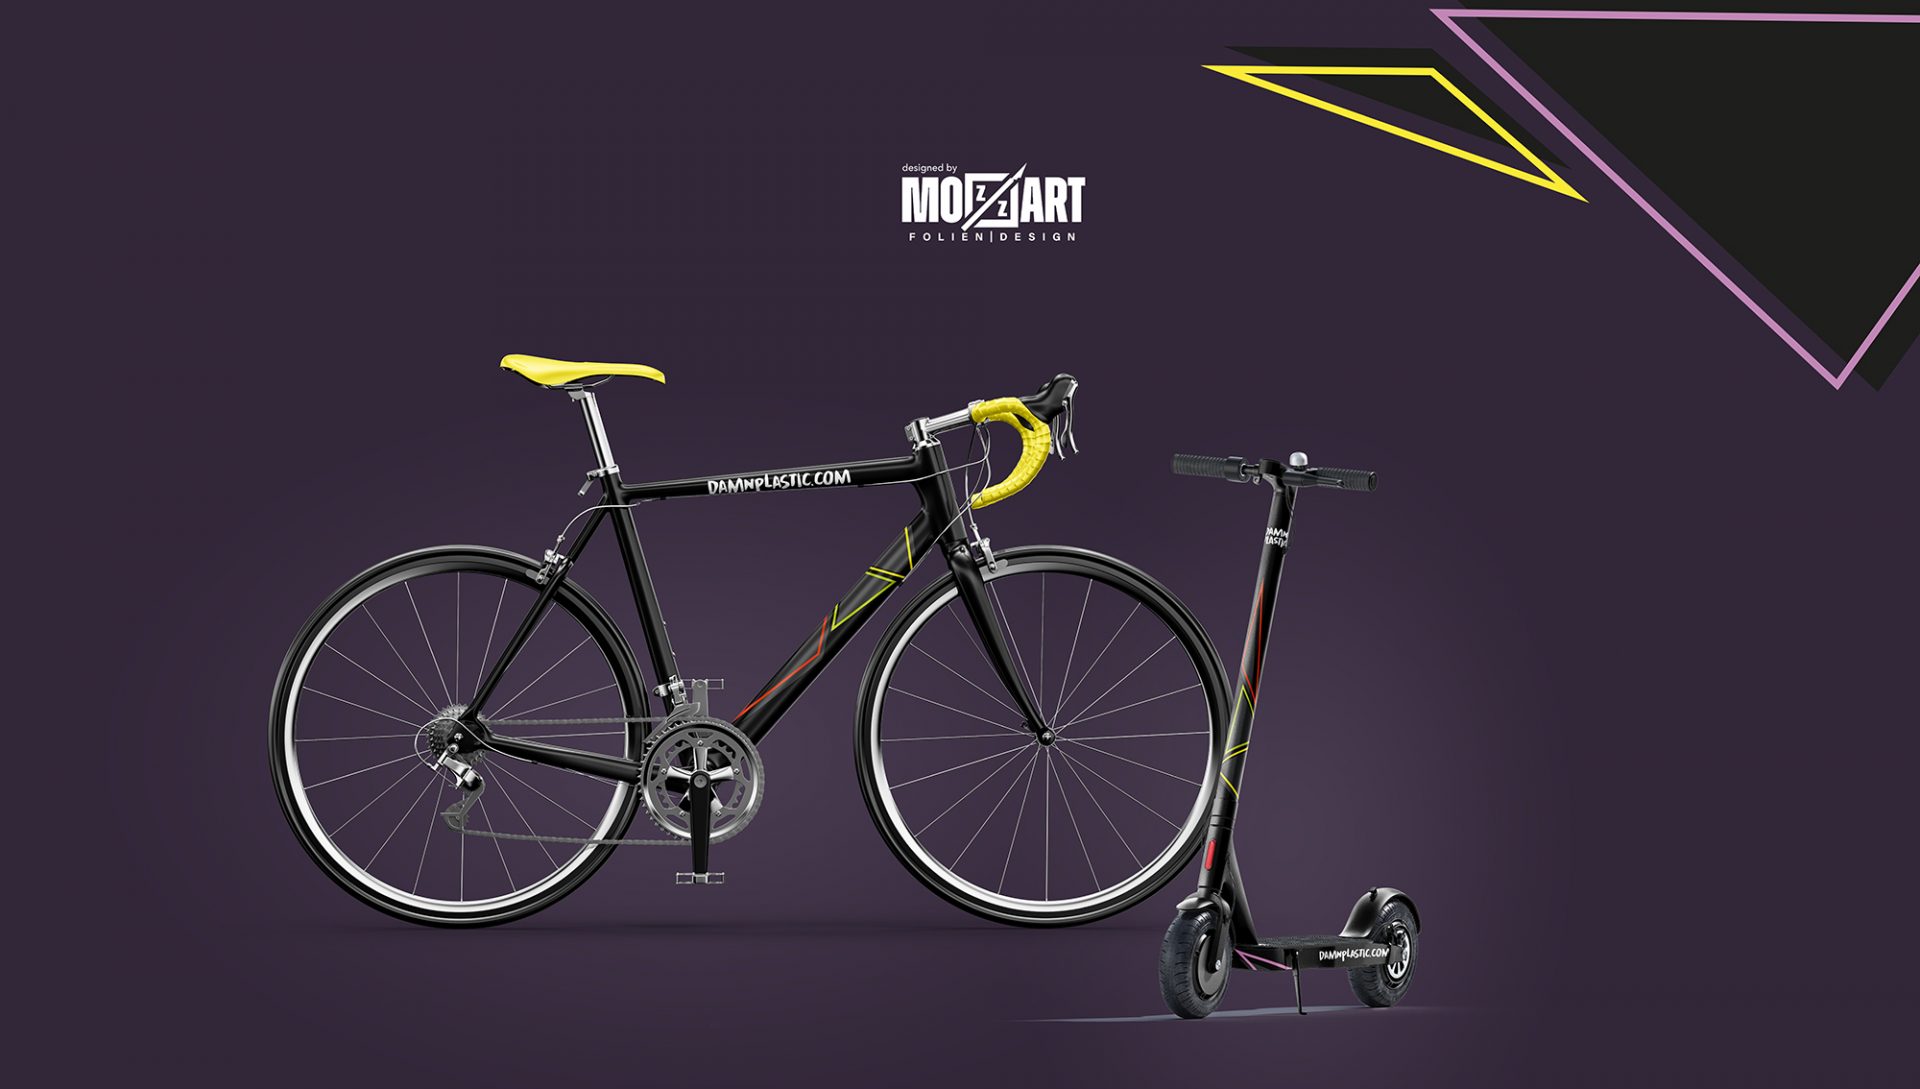 Fahrrad und Scooter Design, fotorealistischer Design Entwurf, gehört zusammen mit einer kompletten Firmenbeschriftung, Autofolierung